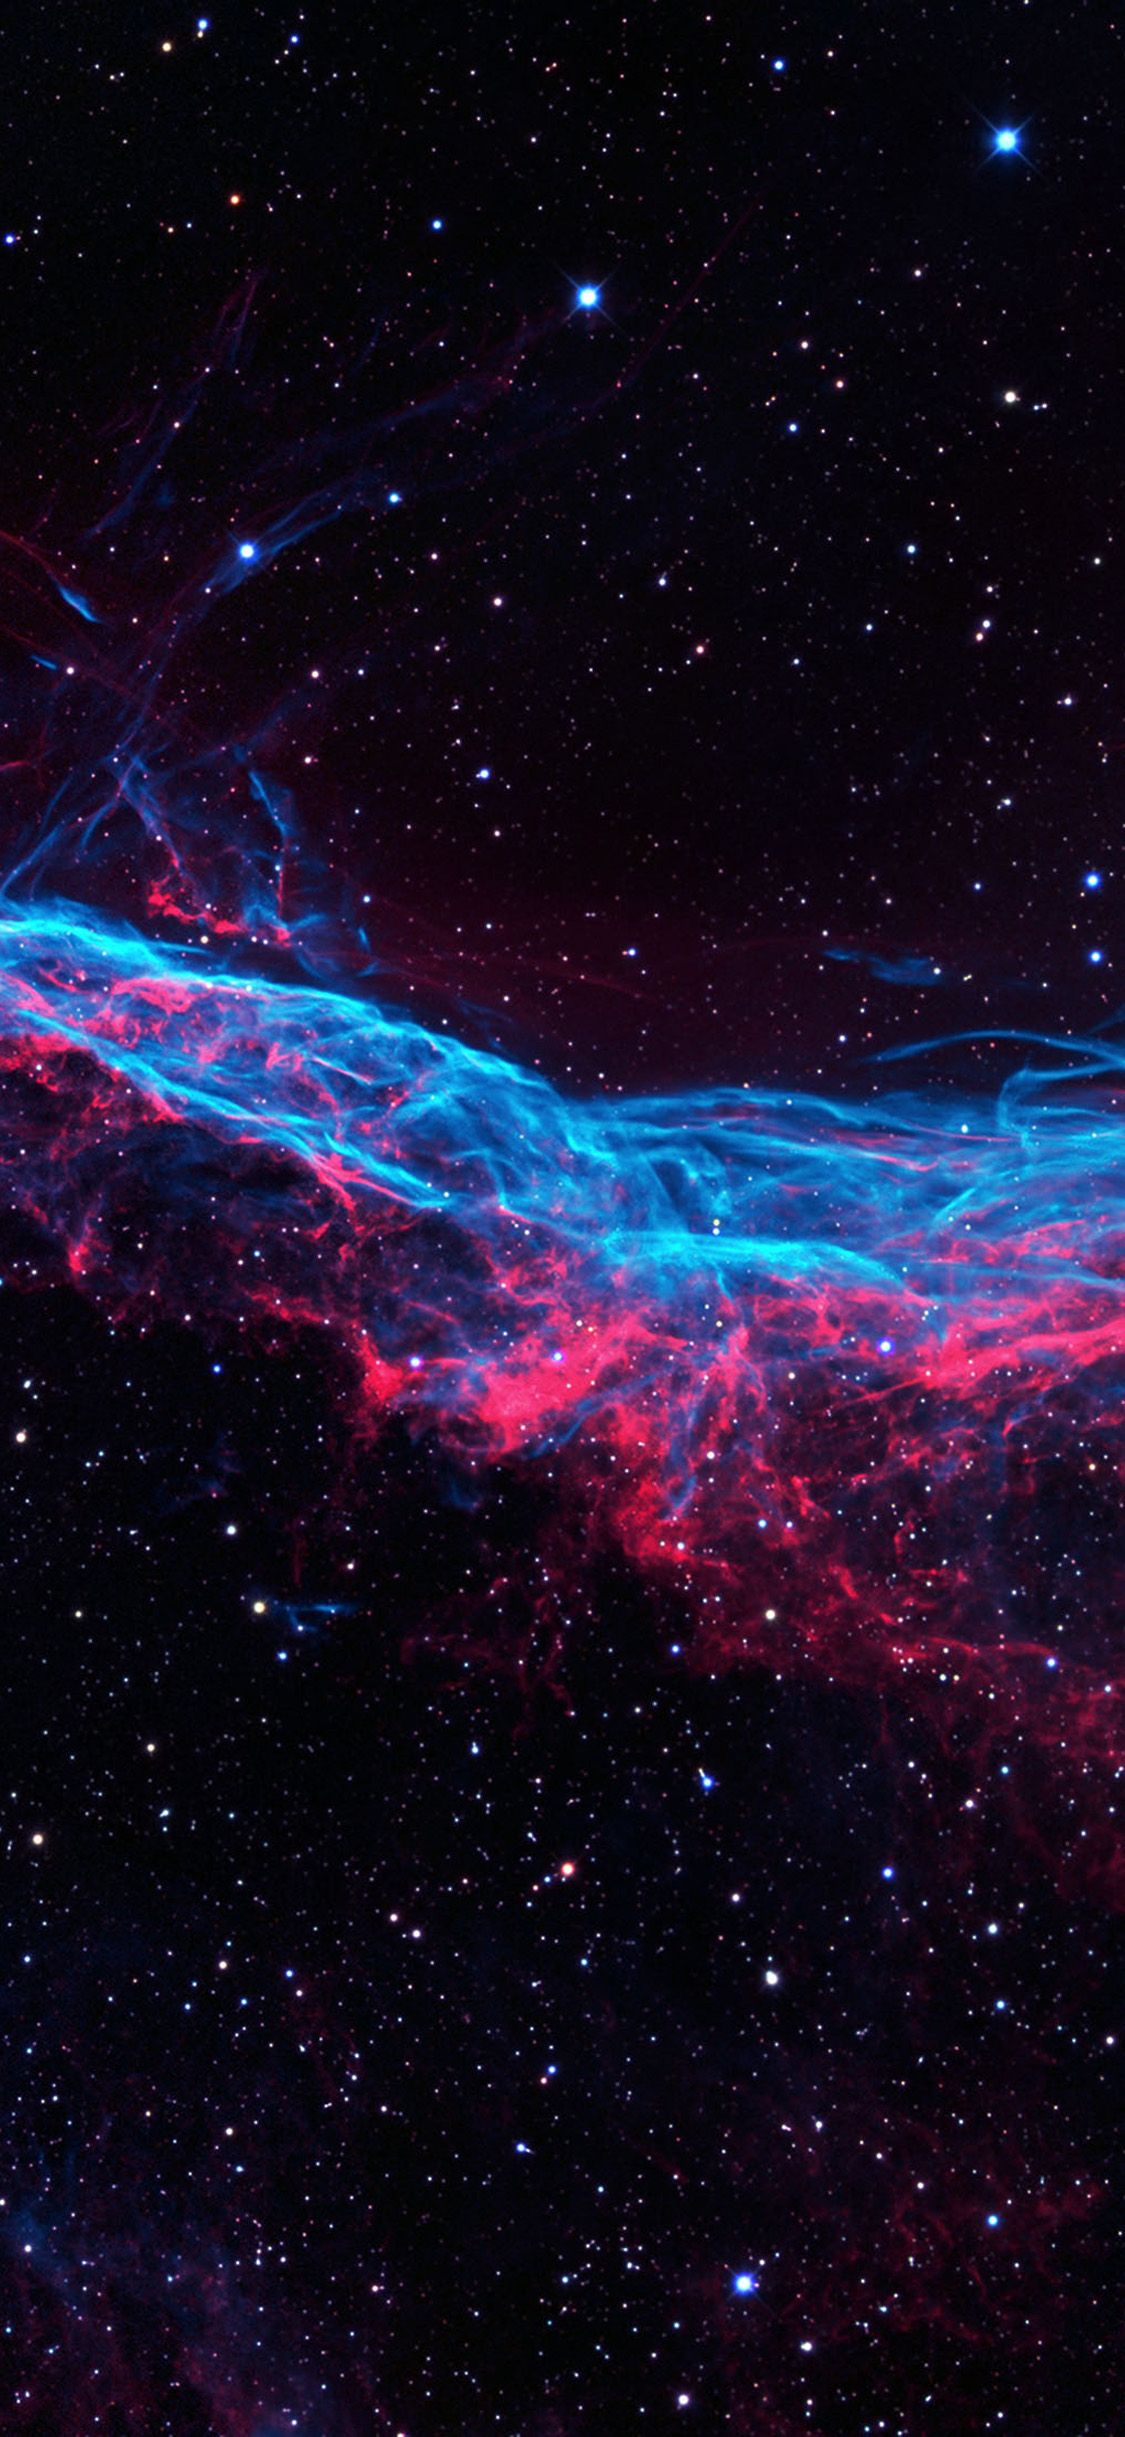 spazio wallpaper hd,spazio,atmosfera,cielo,oggetto astronomico,nebulosa